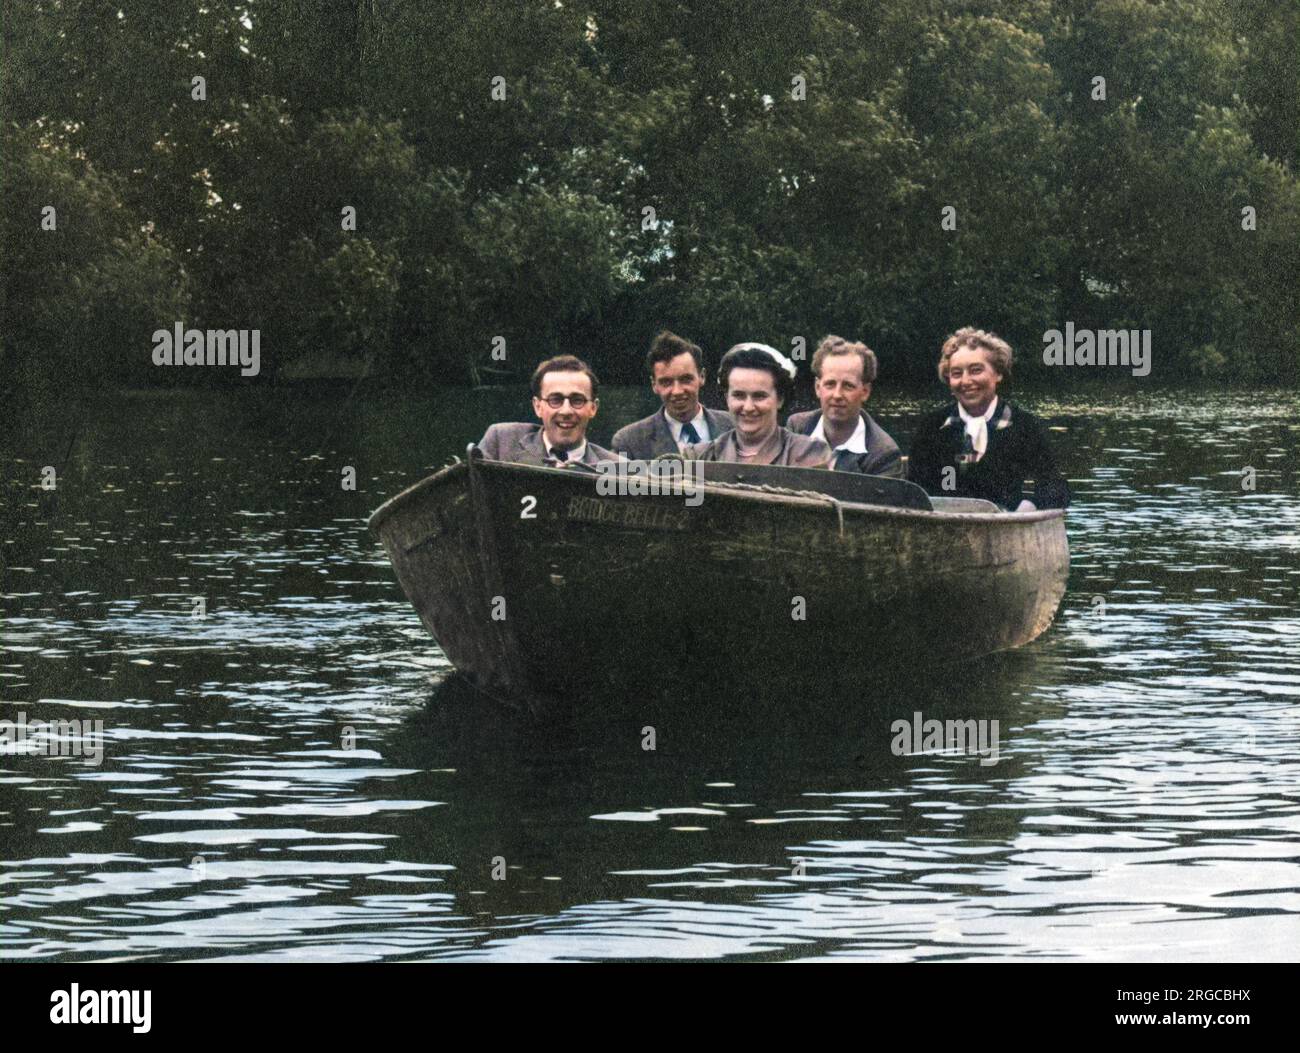 Fünf Freunde in einem sehr kleinen Motorboot („The Bridge Belle 2“) machen einen fröhlichen Ausflug auf der Themse! Stockfoto